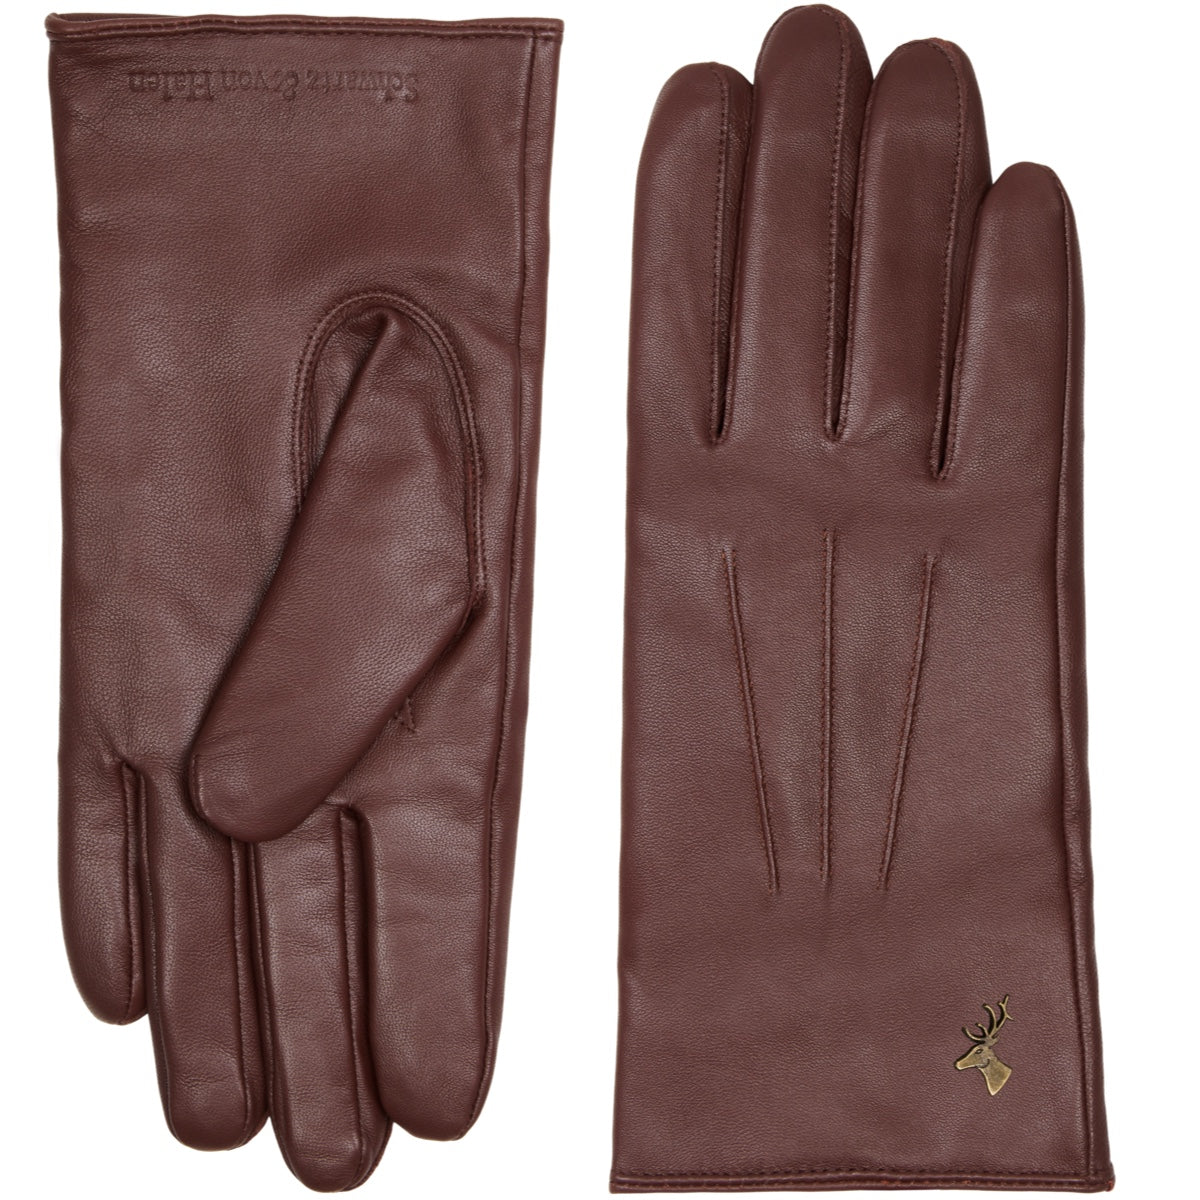 Classic Leather Gloves Brown Men James - Schwartz & von Halen® - Premium Leather Gloves - 2